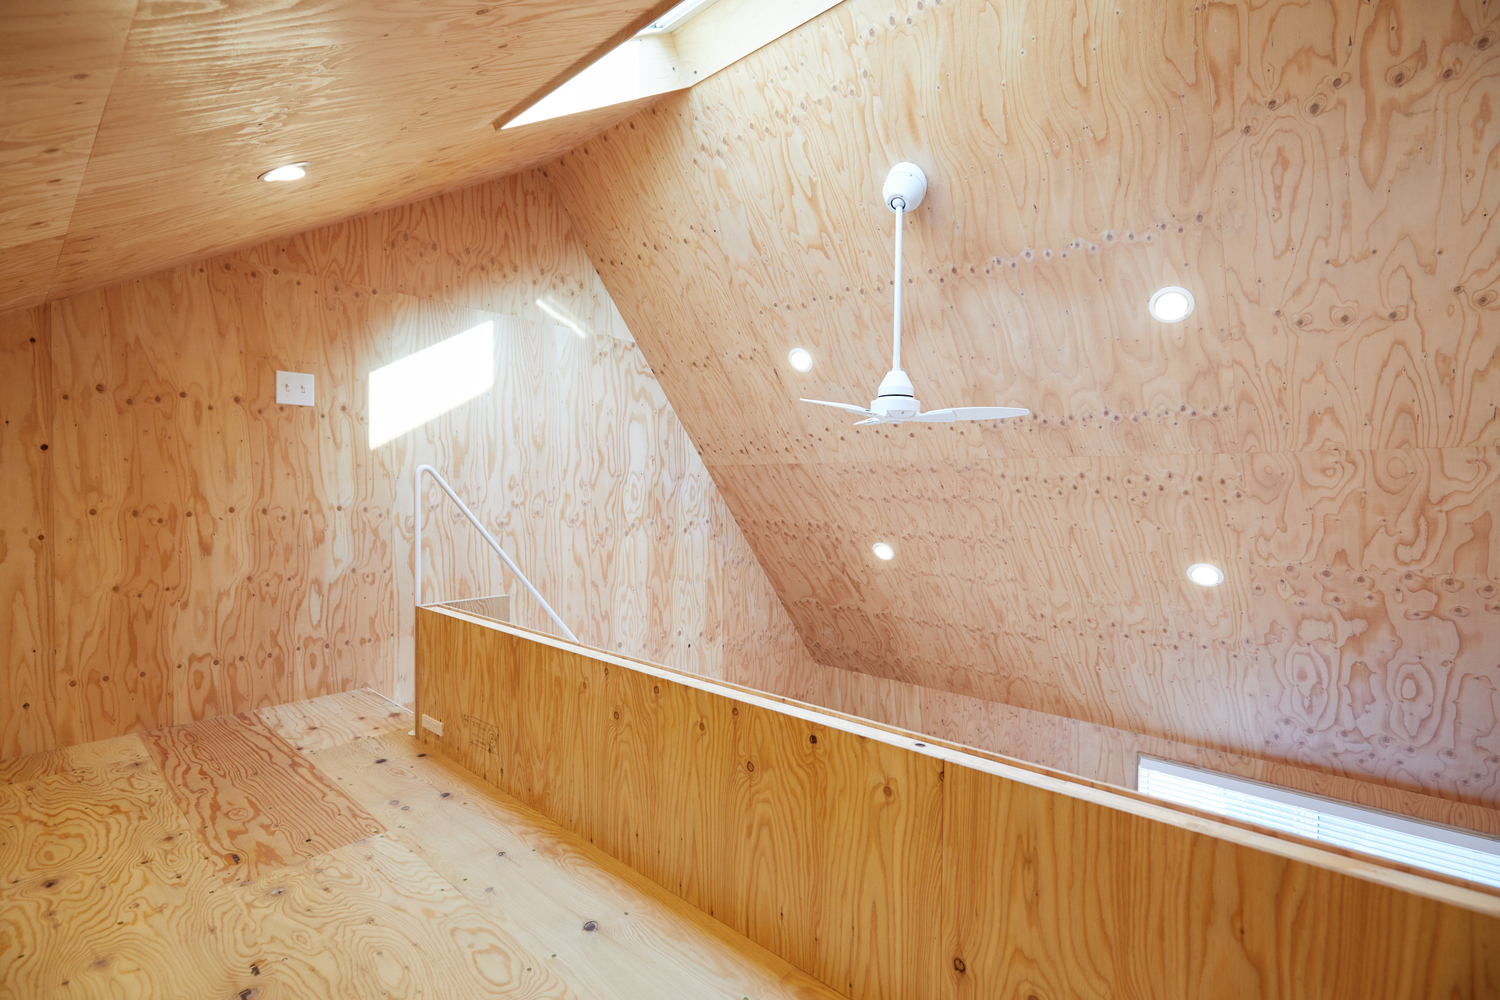 Hình ảnh cận cảnh trần nhà ốp gỗ, ốp đèn ầm trần